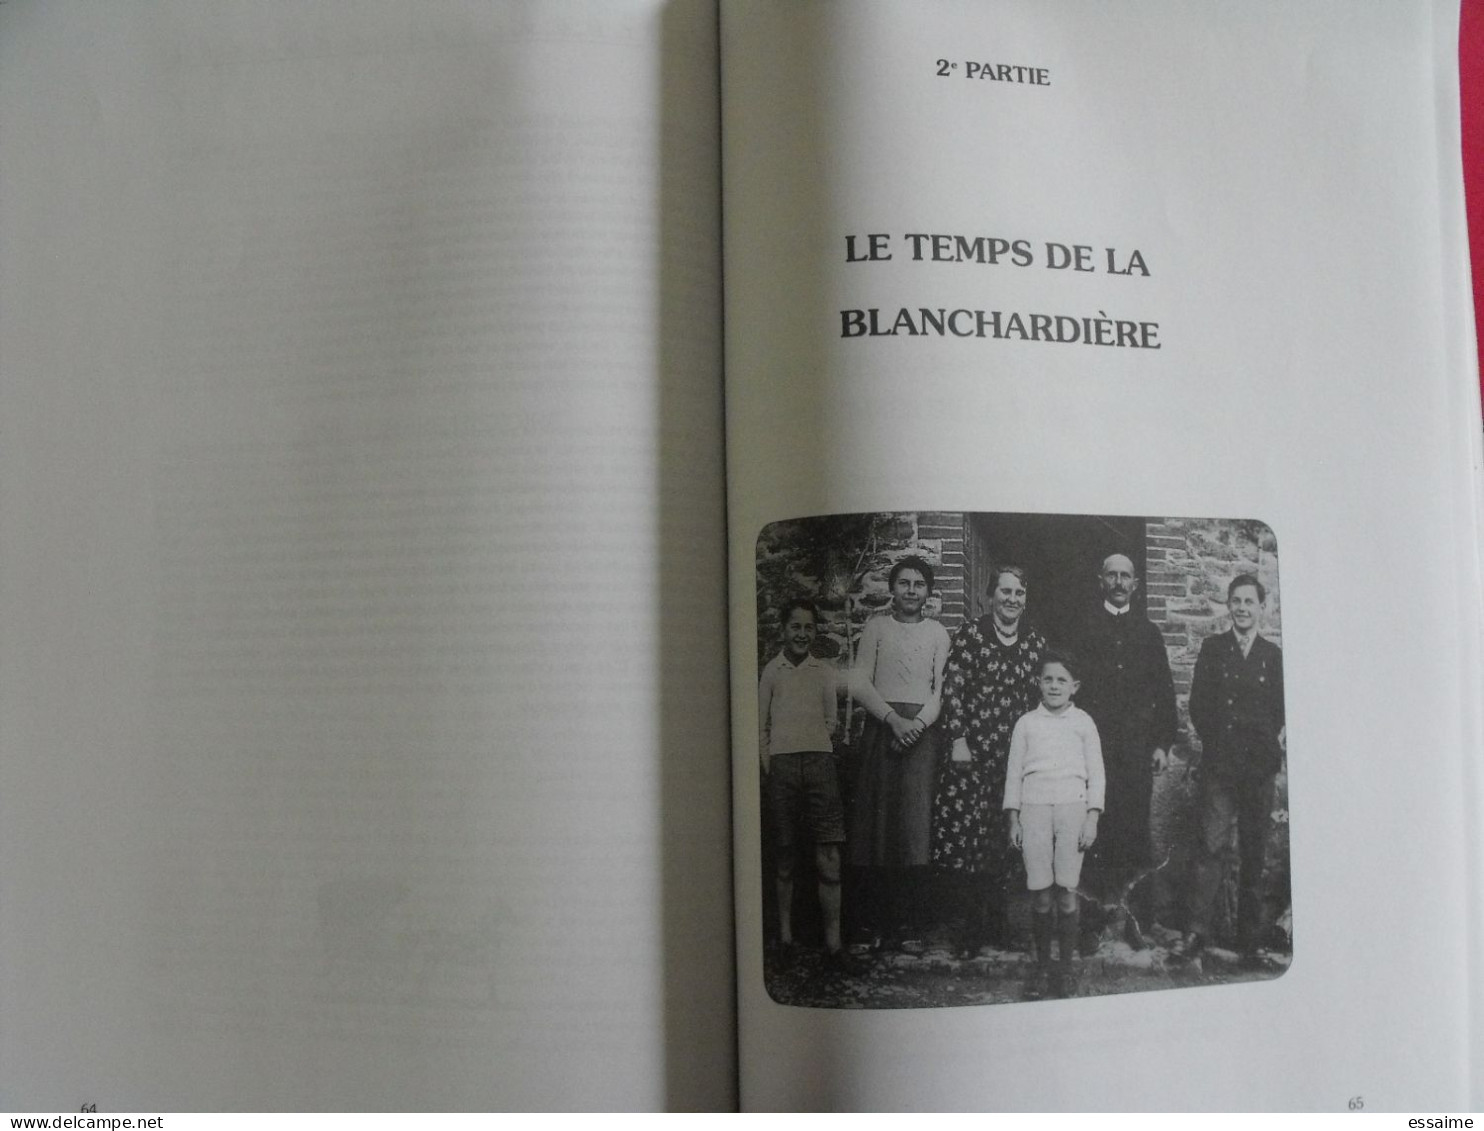 mémoires d'une famille mayennaise 1870-1970. Augustin Raimbault. l'oribus n° 46. juin 1998.